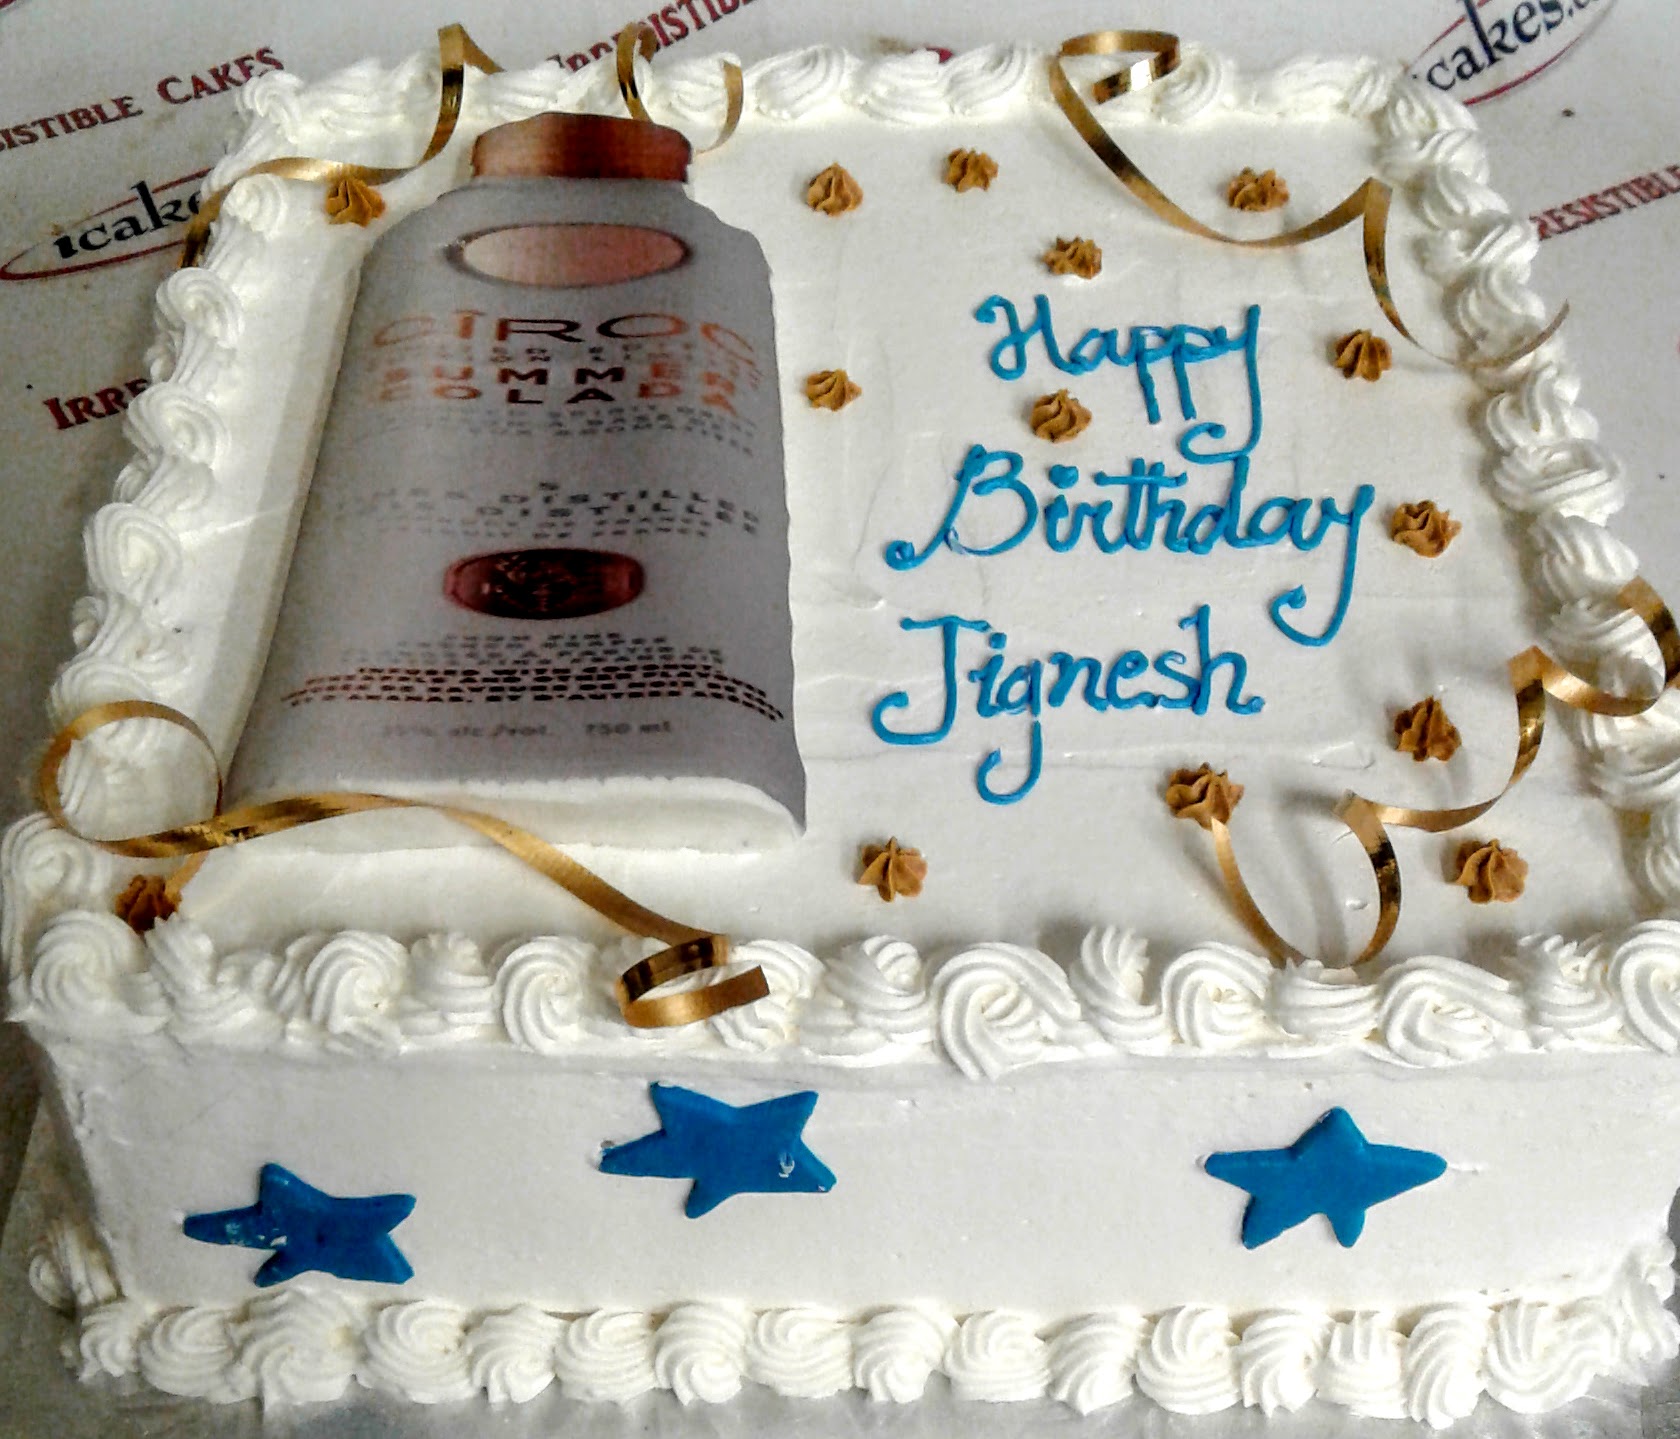 Whisky/Wine/Jack Daniels Bottle Buttercream Birthday Cake For Man